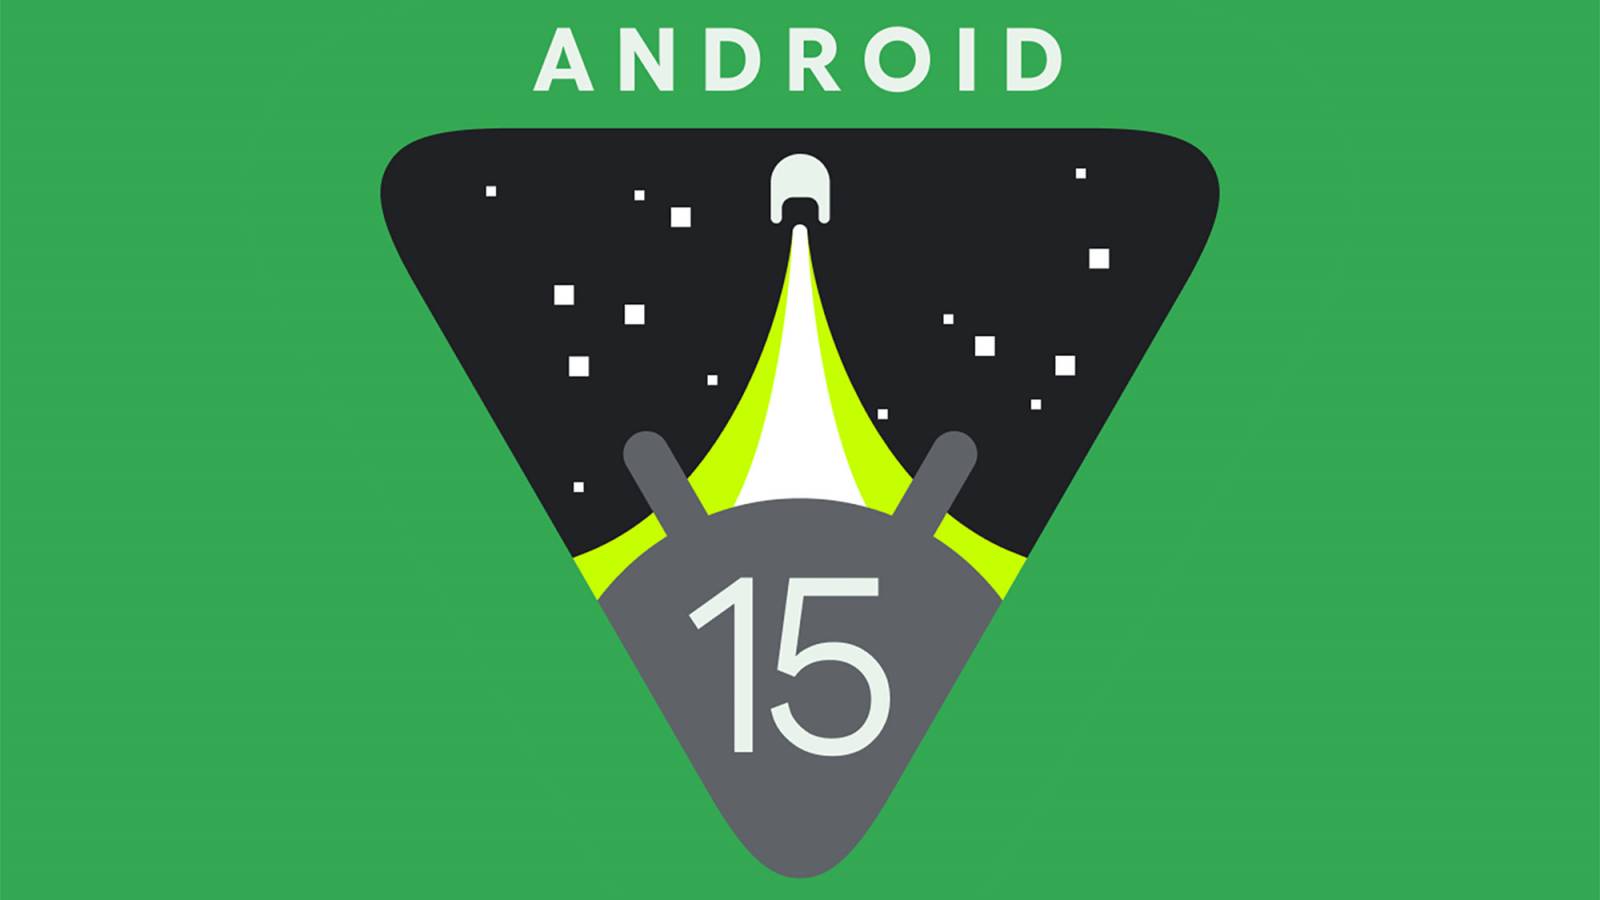 Android 15 bevat updates dwingt applicaties tot grote veranderingen